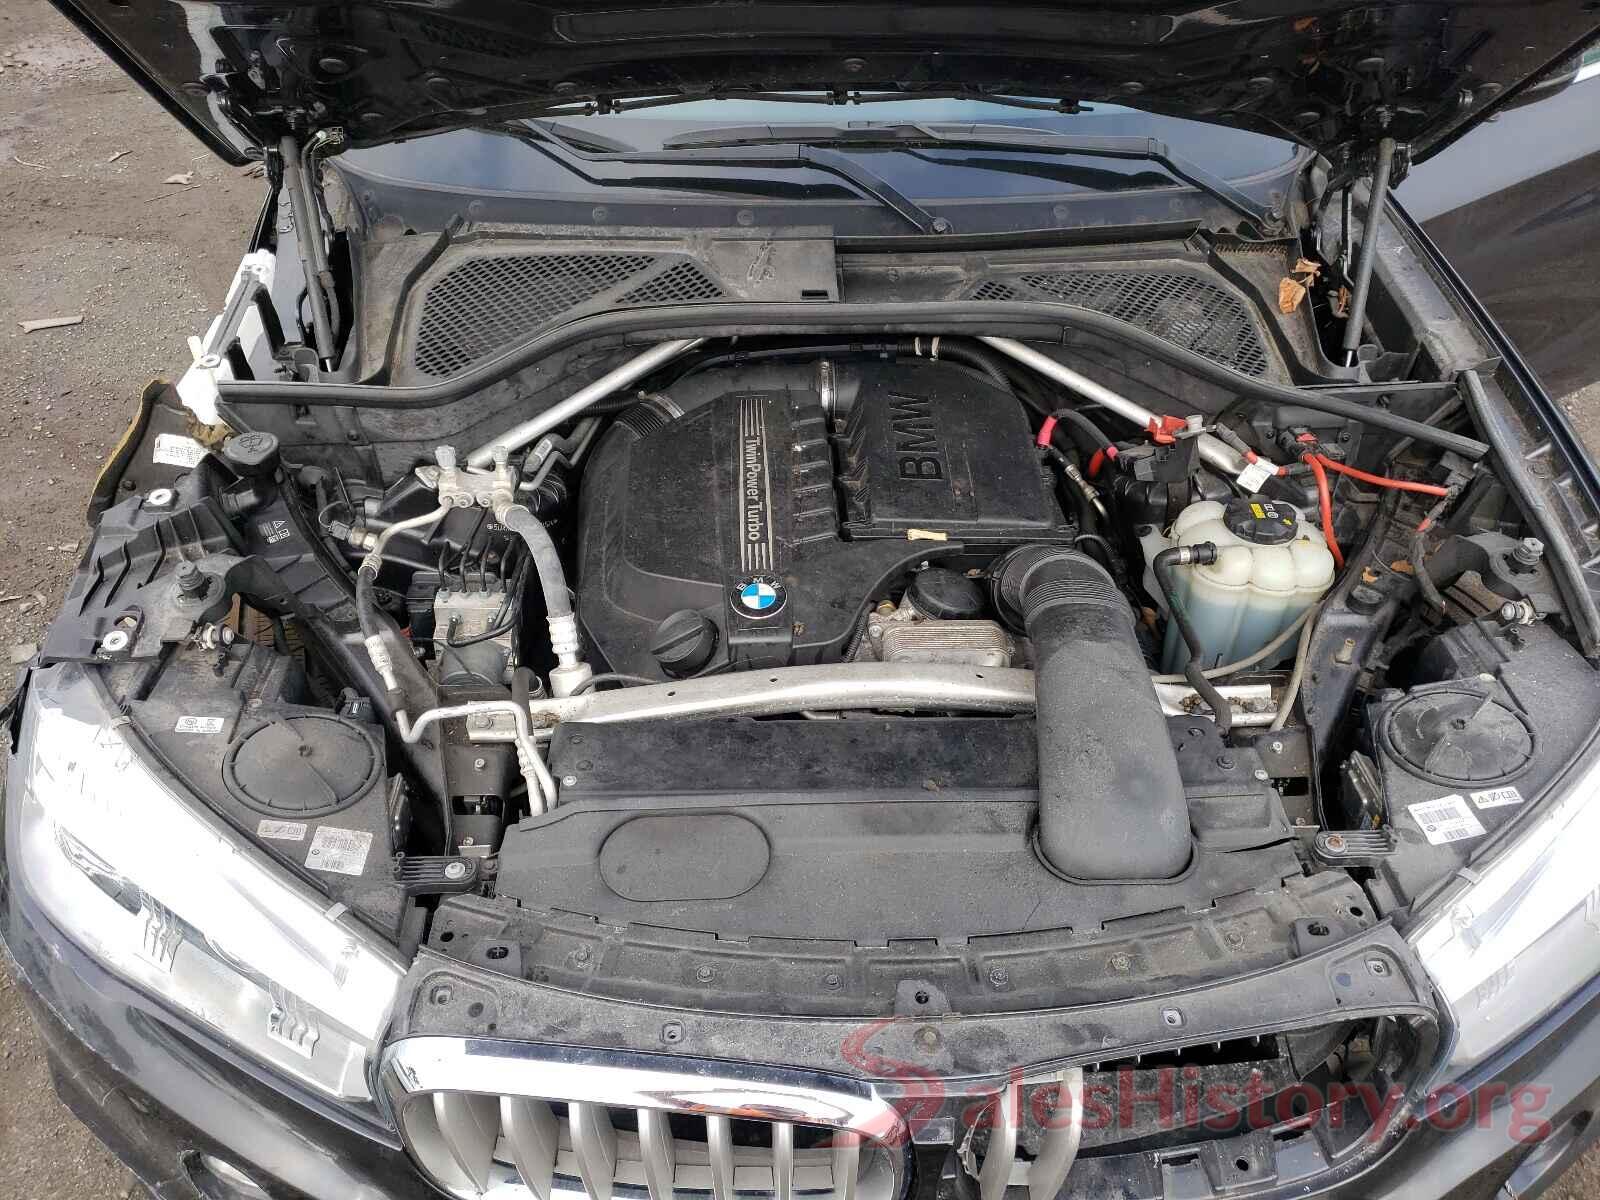 5UXKR0C50JL074524 2018 BMW X5